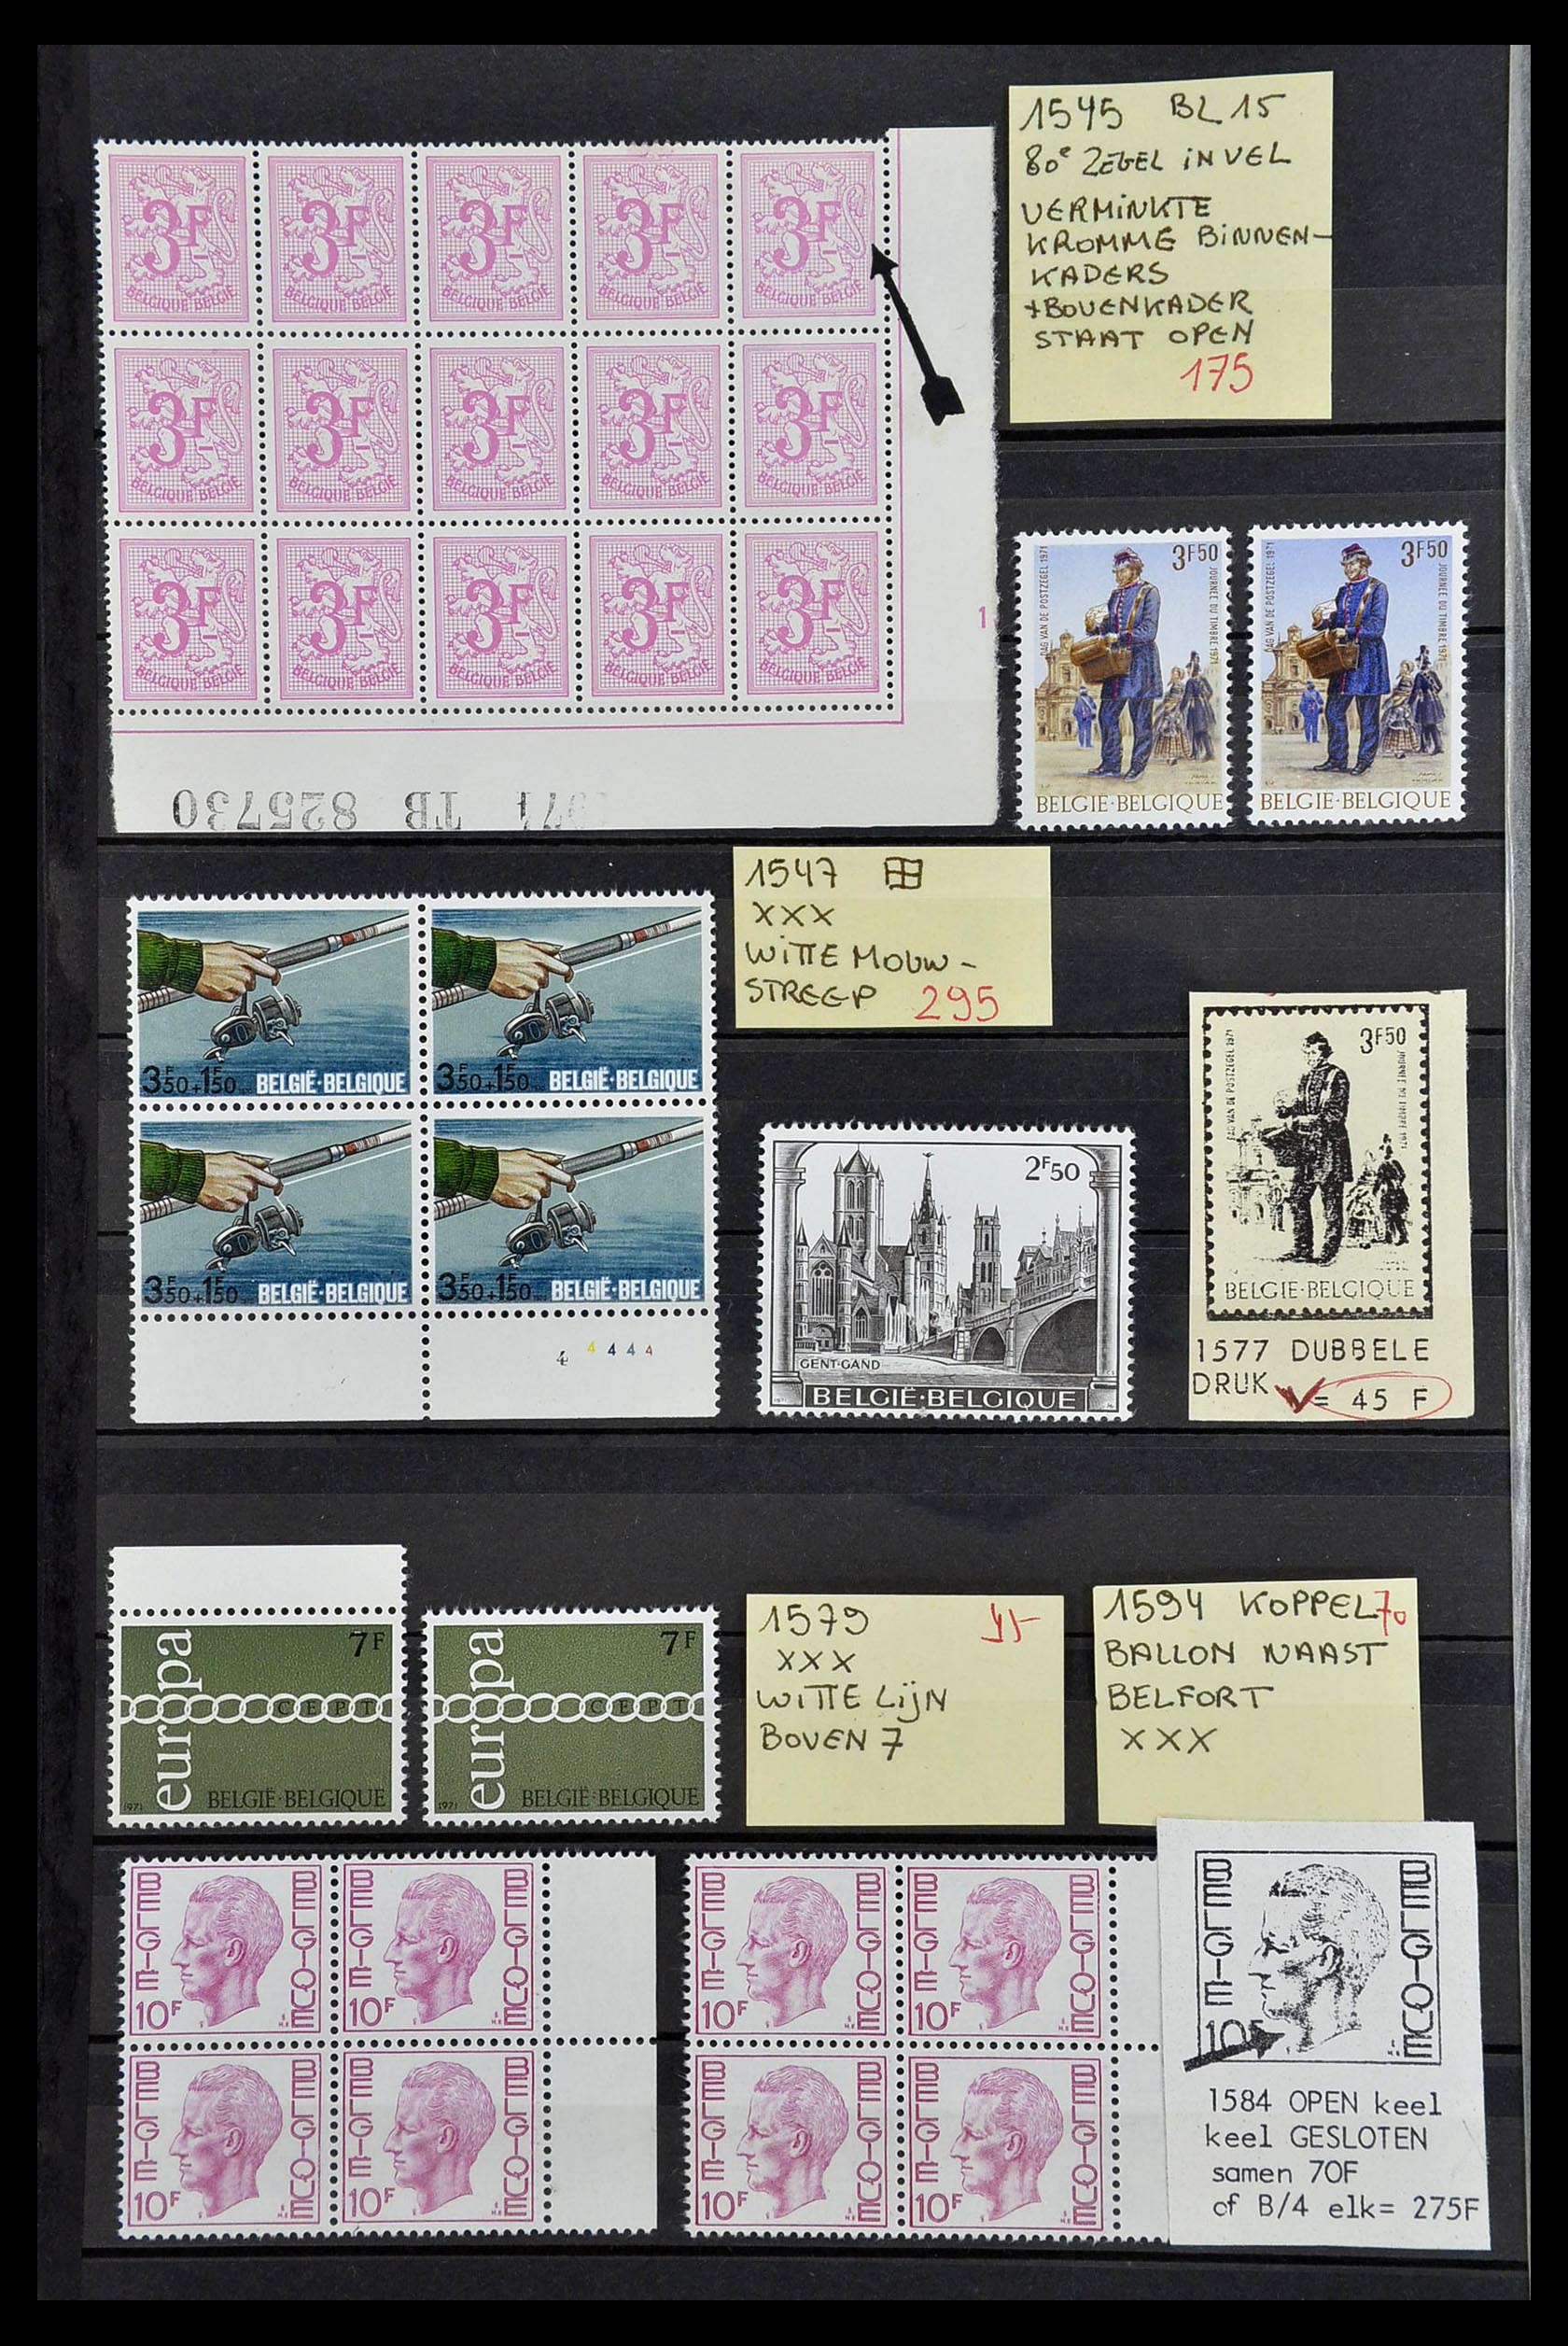 34649 032 - Stamp Collection 34649 Belgium varieties 1940-1971.